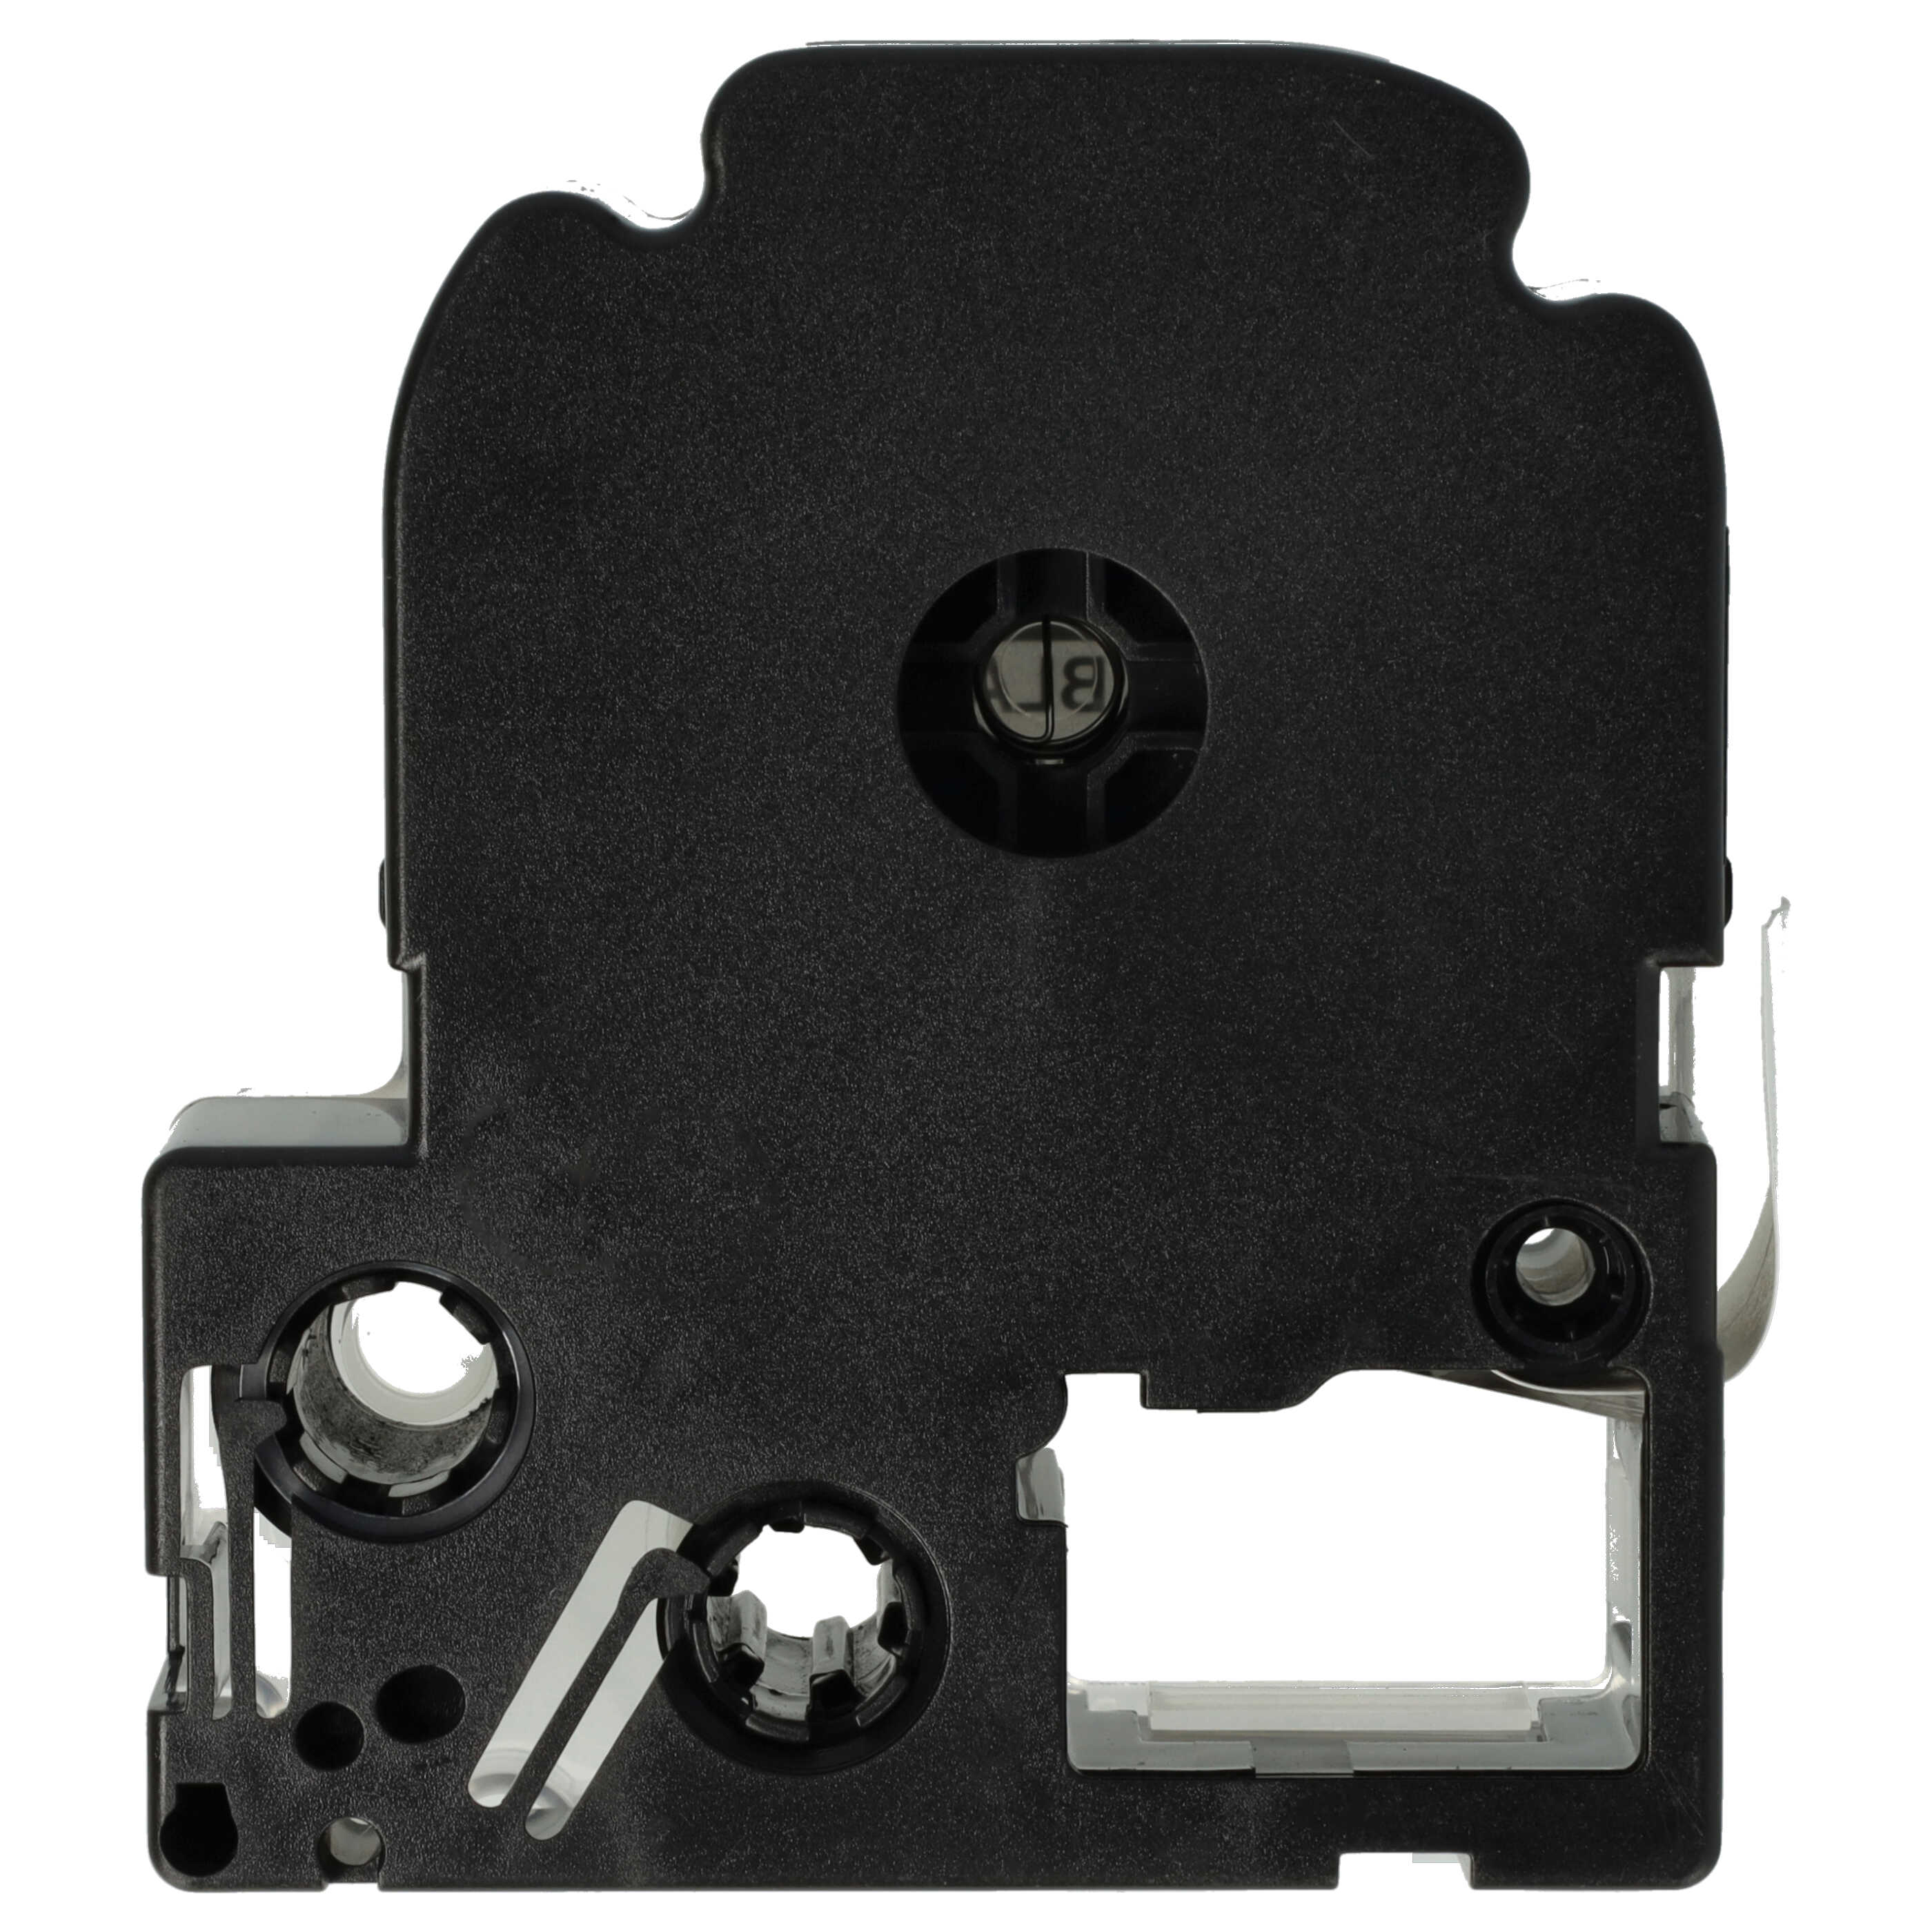 5x Cassetta nastro sostituisce Epson LC-6WBN per etichettatrice Epson 24mm nero su bianco